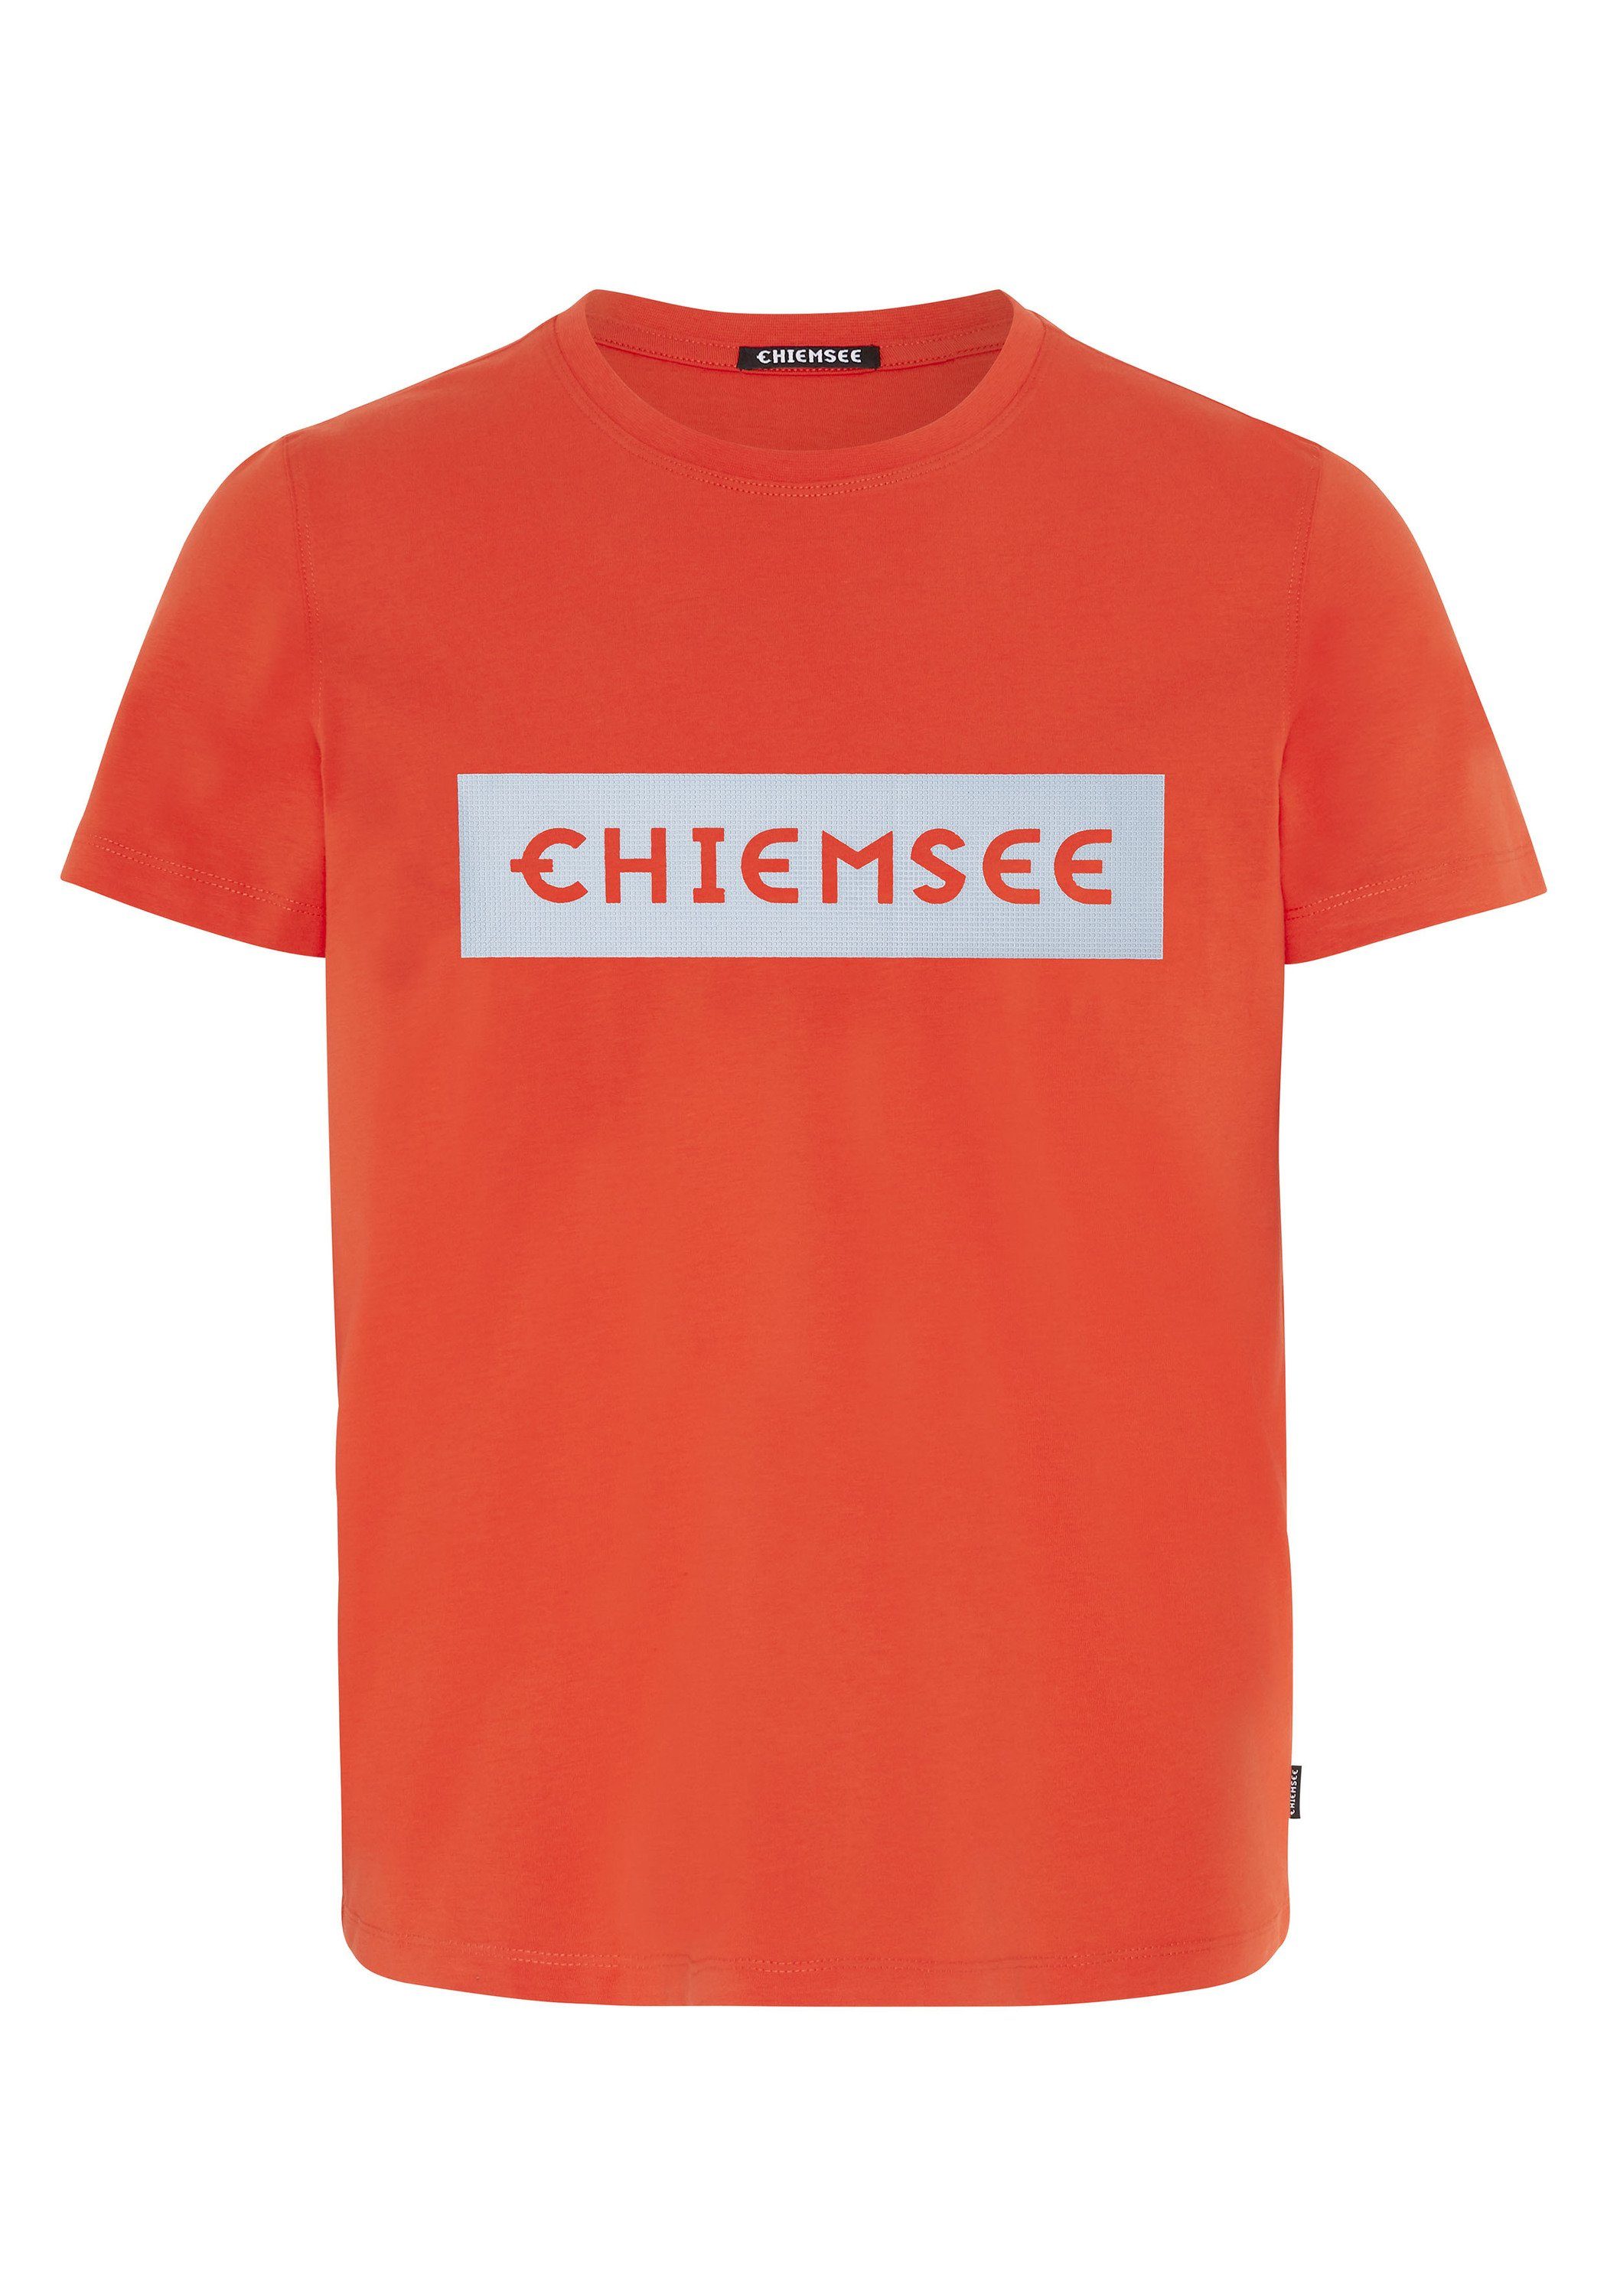 1 T-Shirt Print-Shirt Markenschriftzug plakativem Chiemsee mit